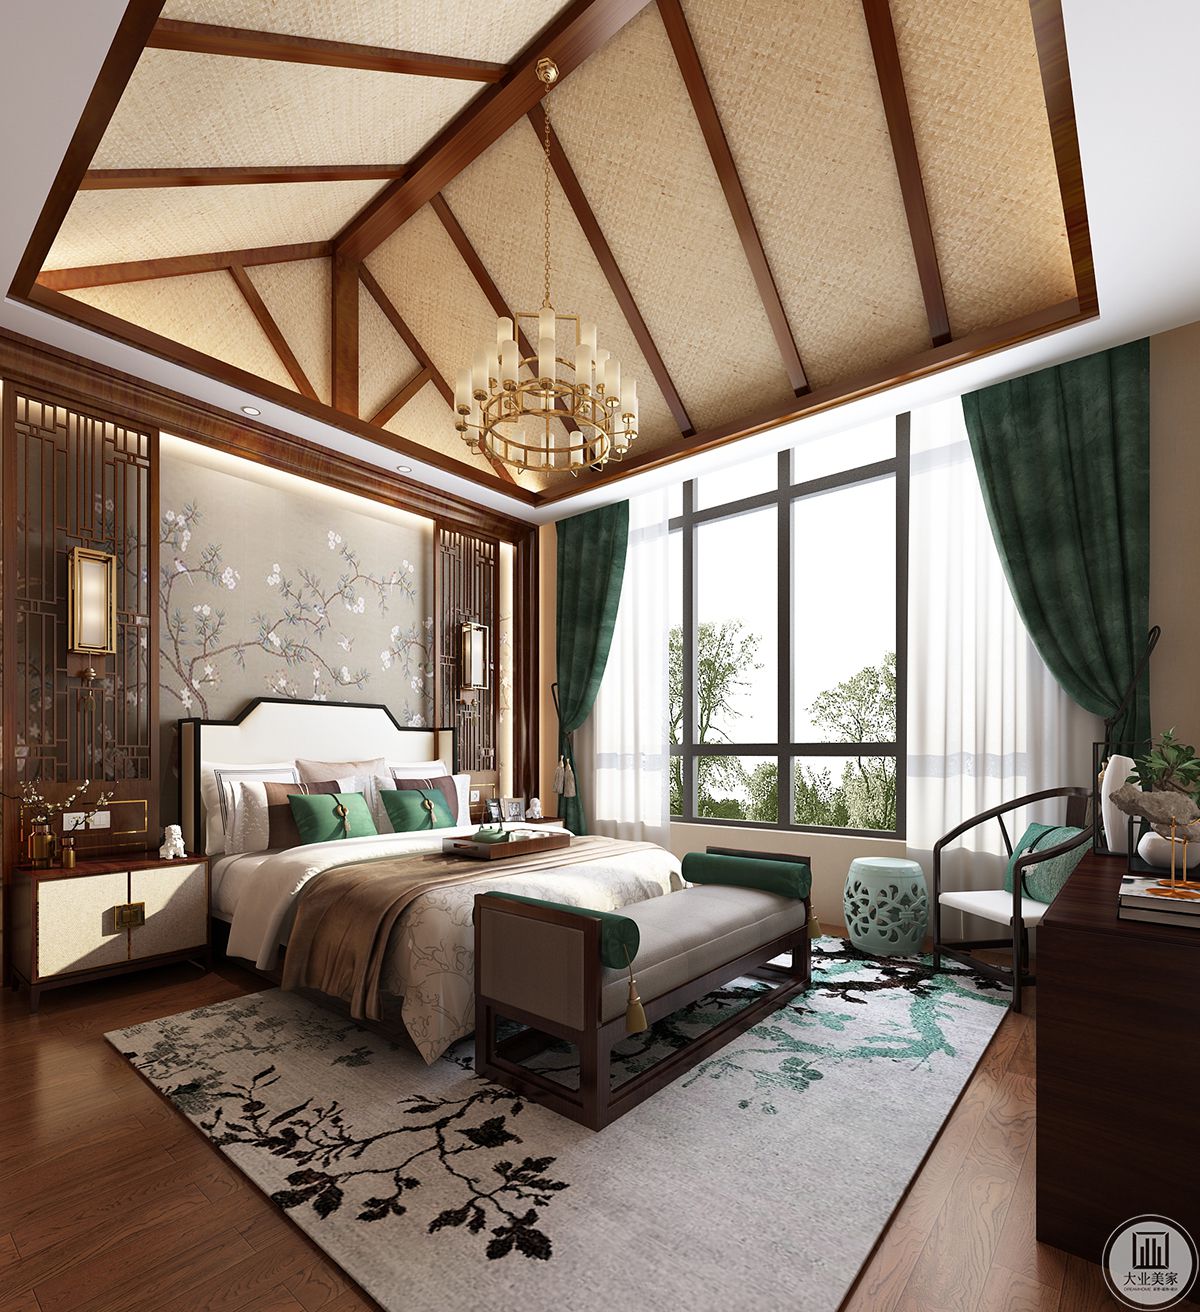 主卧室选用亮色明黄色来搭配，更有棚顶的木质举架设计，整体颜色统一协调。 